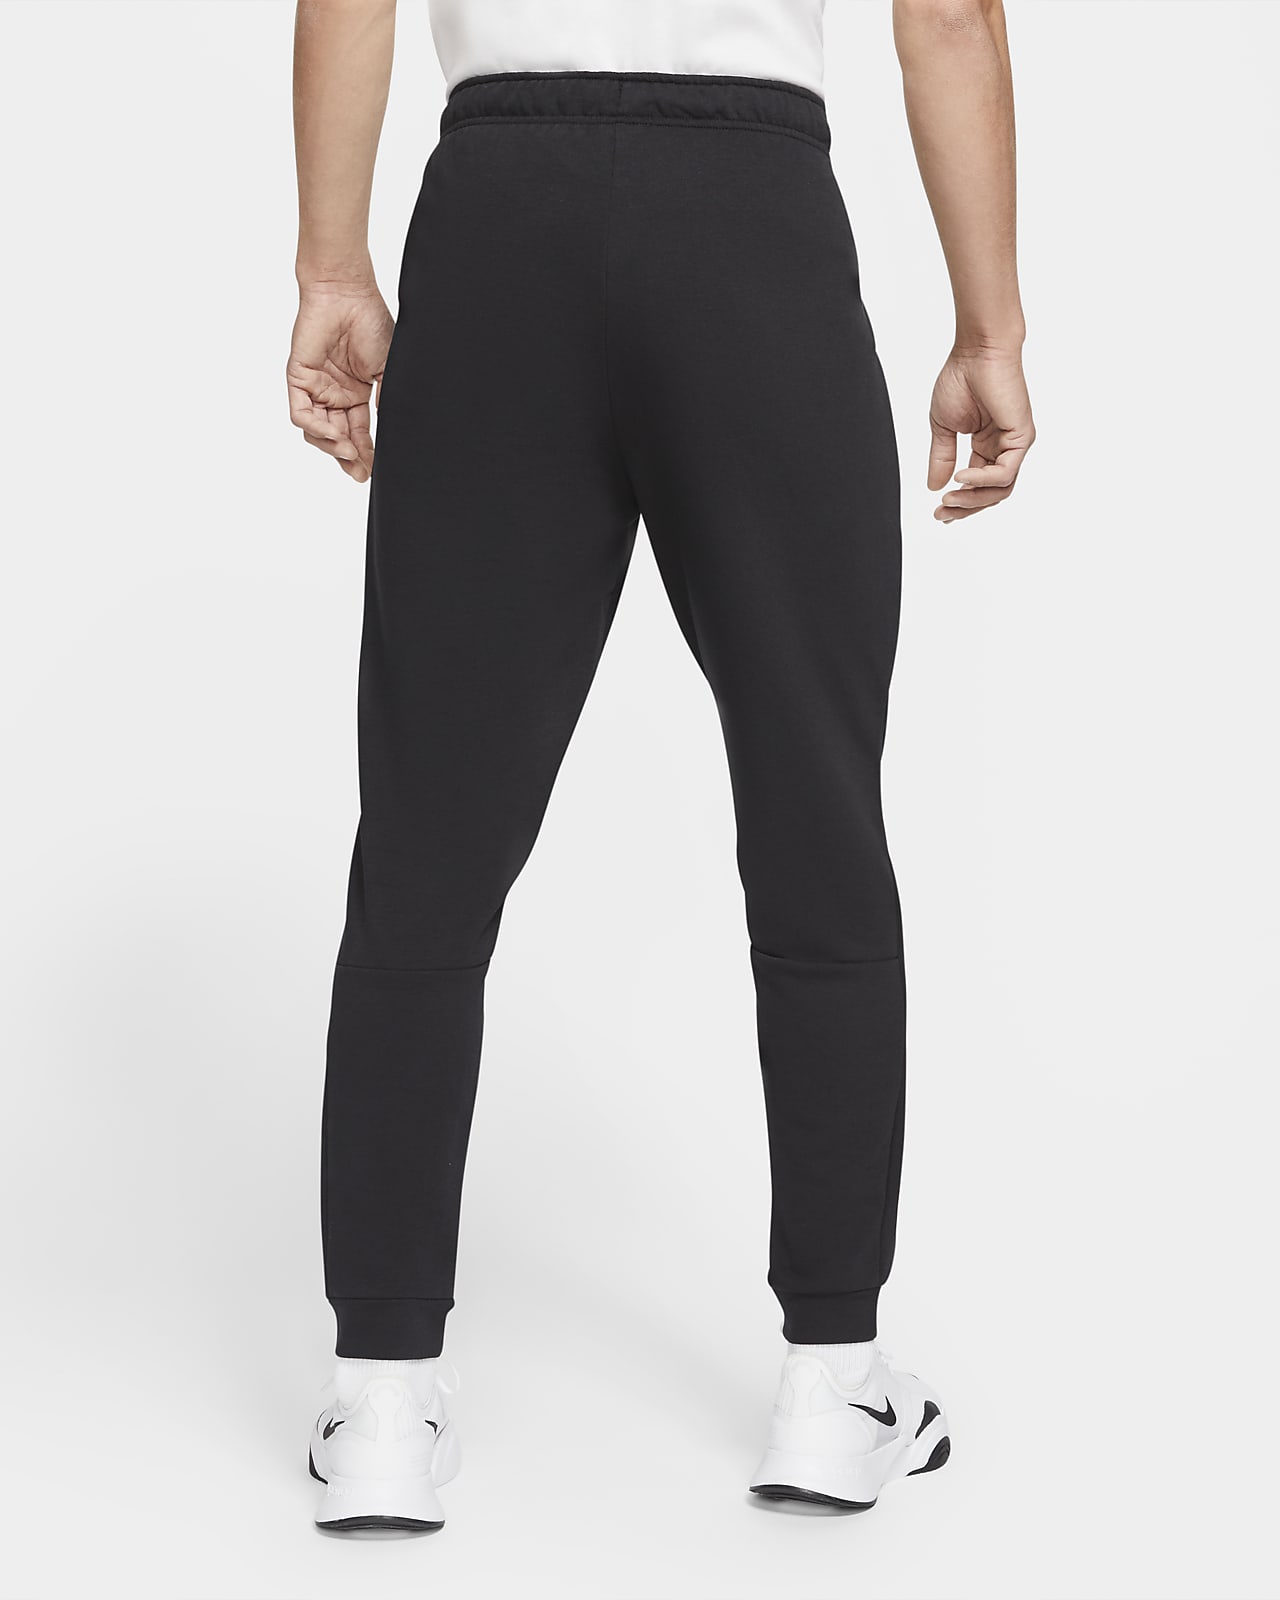 Tech Fleece Pants & Leggings. Nike PT